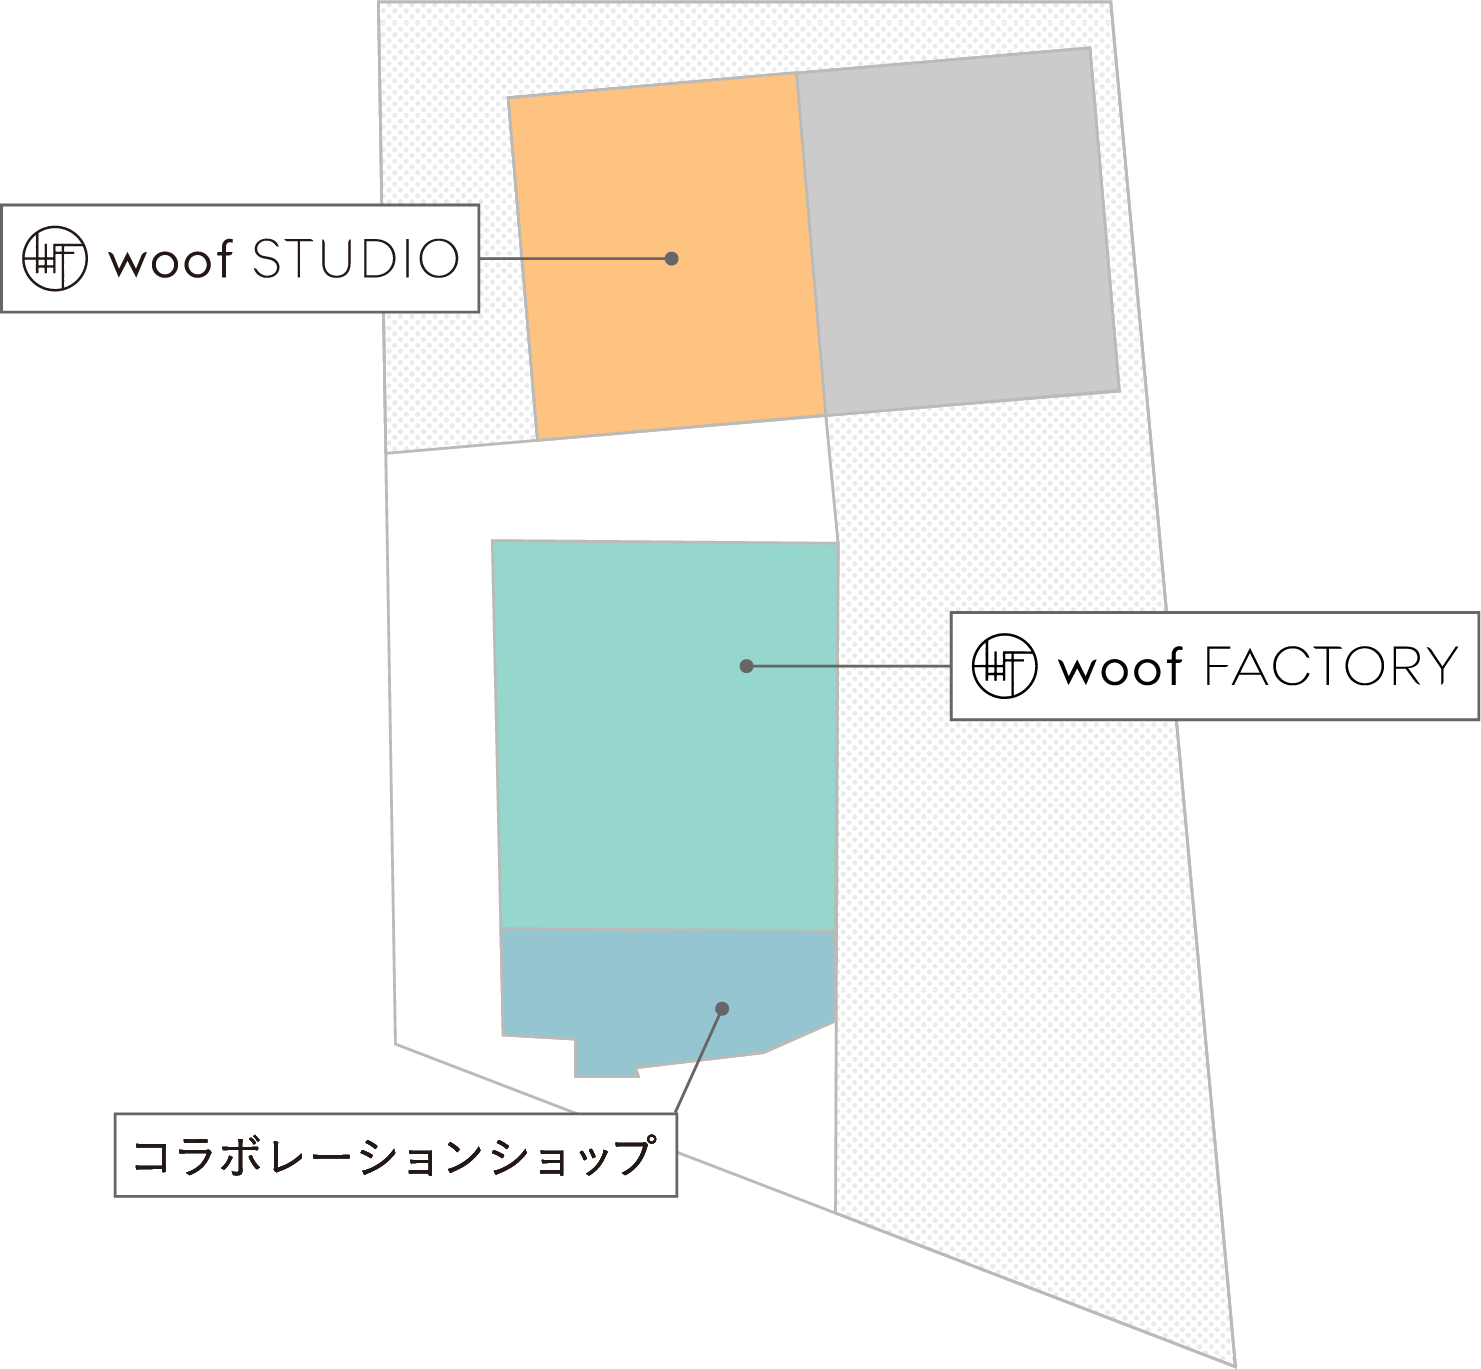 woof STUDIO MAP